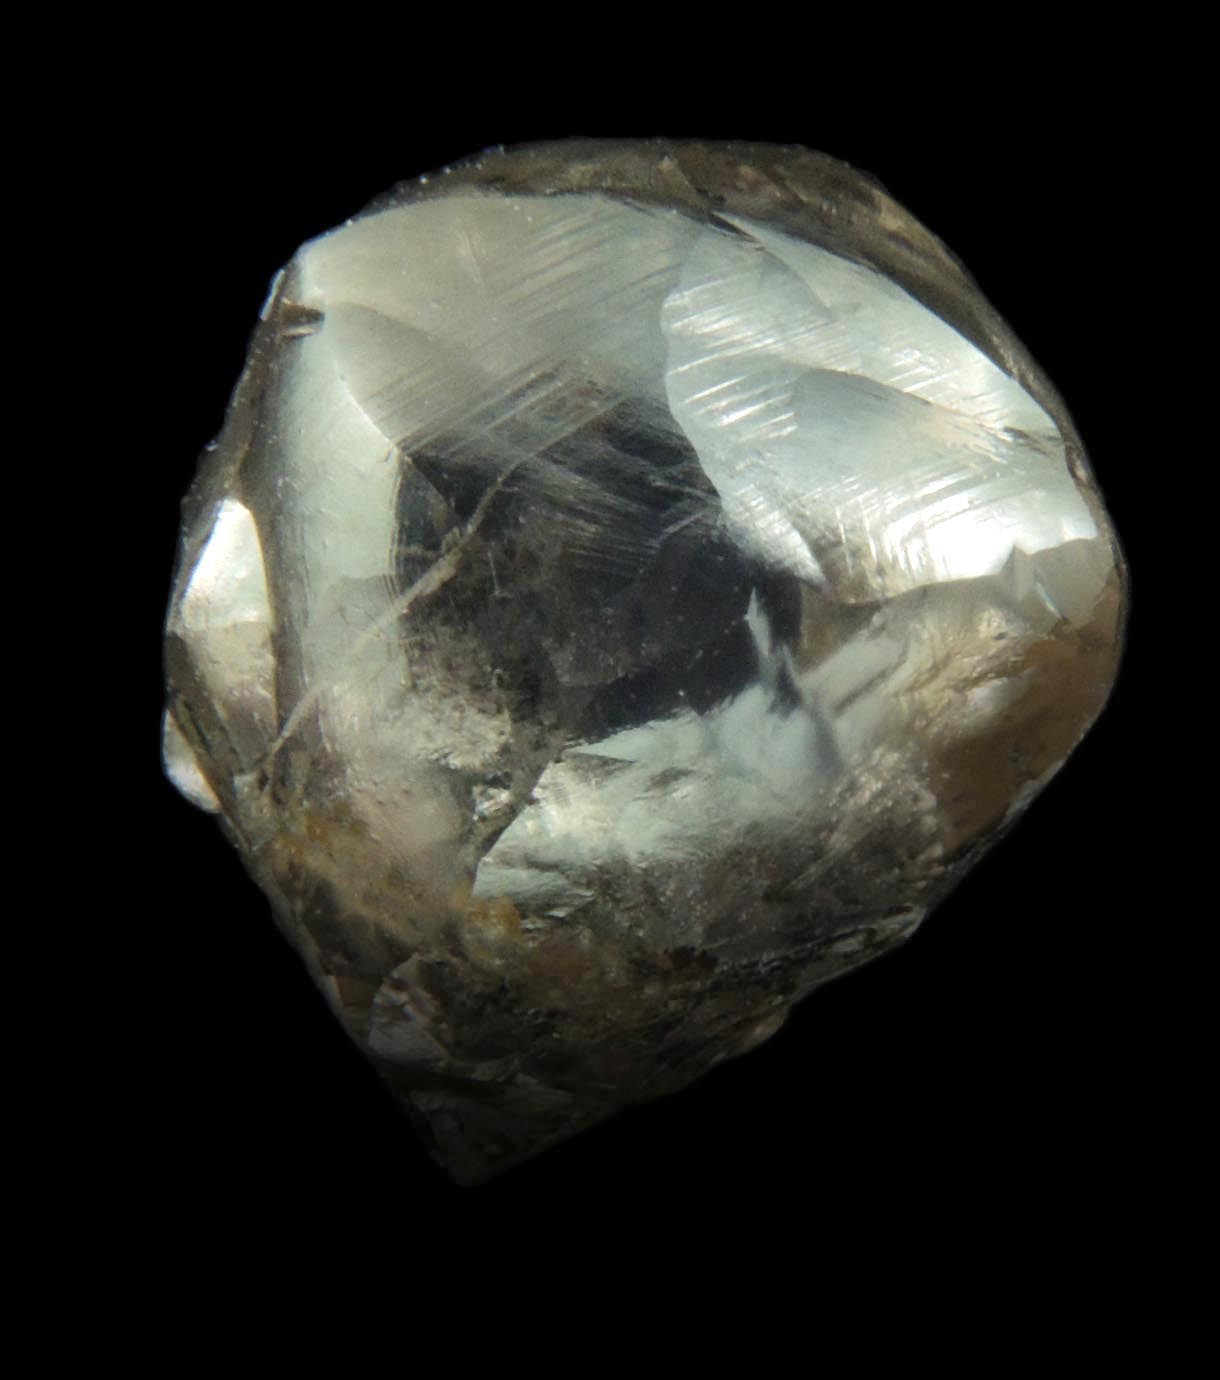 Diamond (10.35 carat large gray lamellar-twinned irregular uncut diamond) from Sakha (Yakutia) Republic, Siberia, Russia